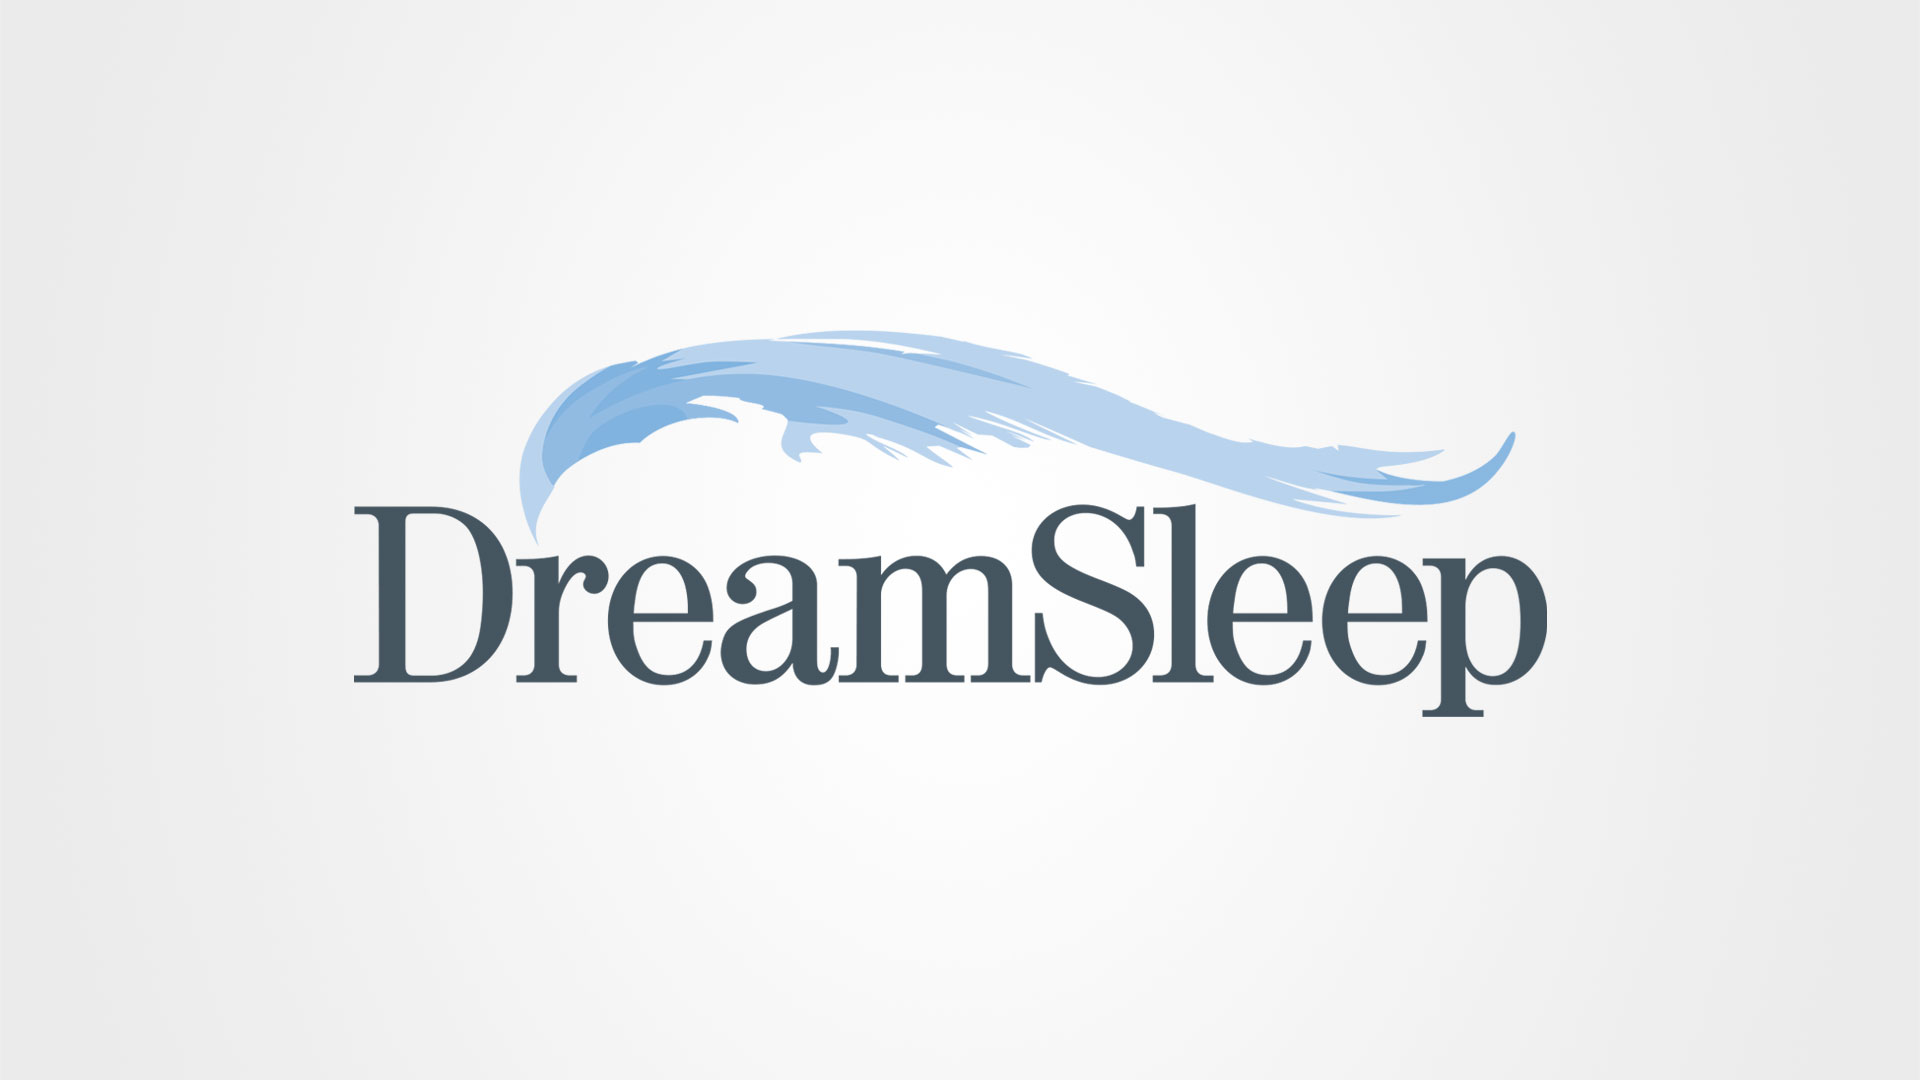 Dreamsleep-Logo-1920x1080